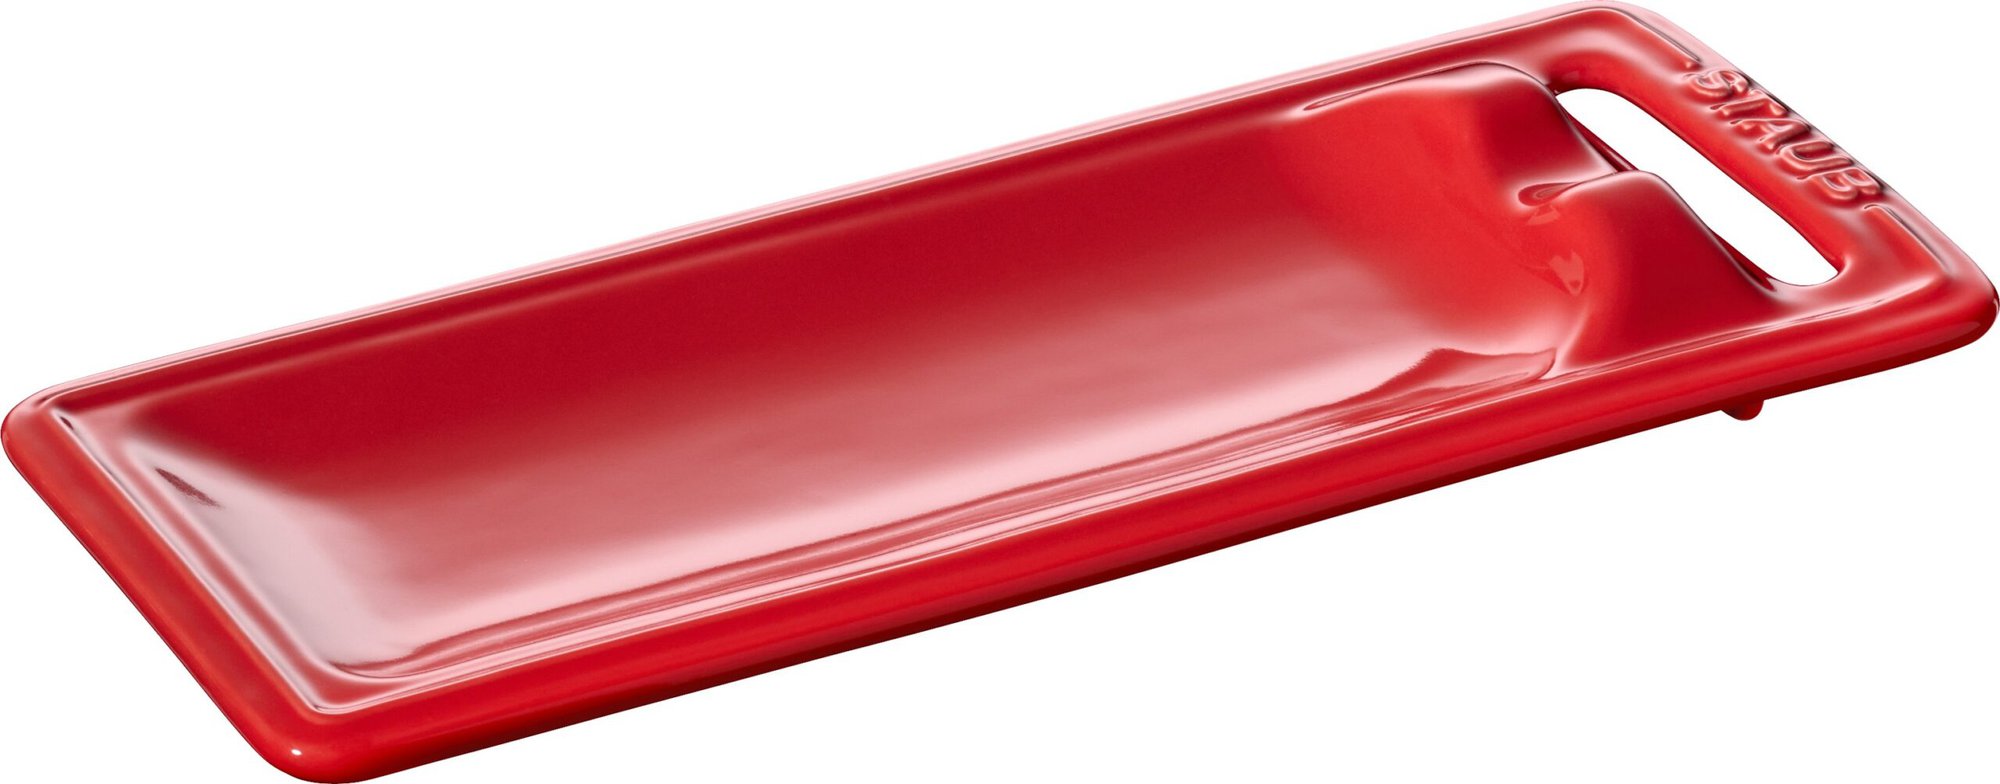 Podstawka pod łyżkę Staub : Kolor – Czerwony